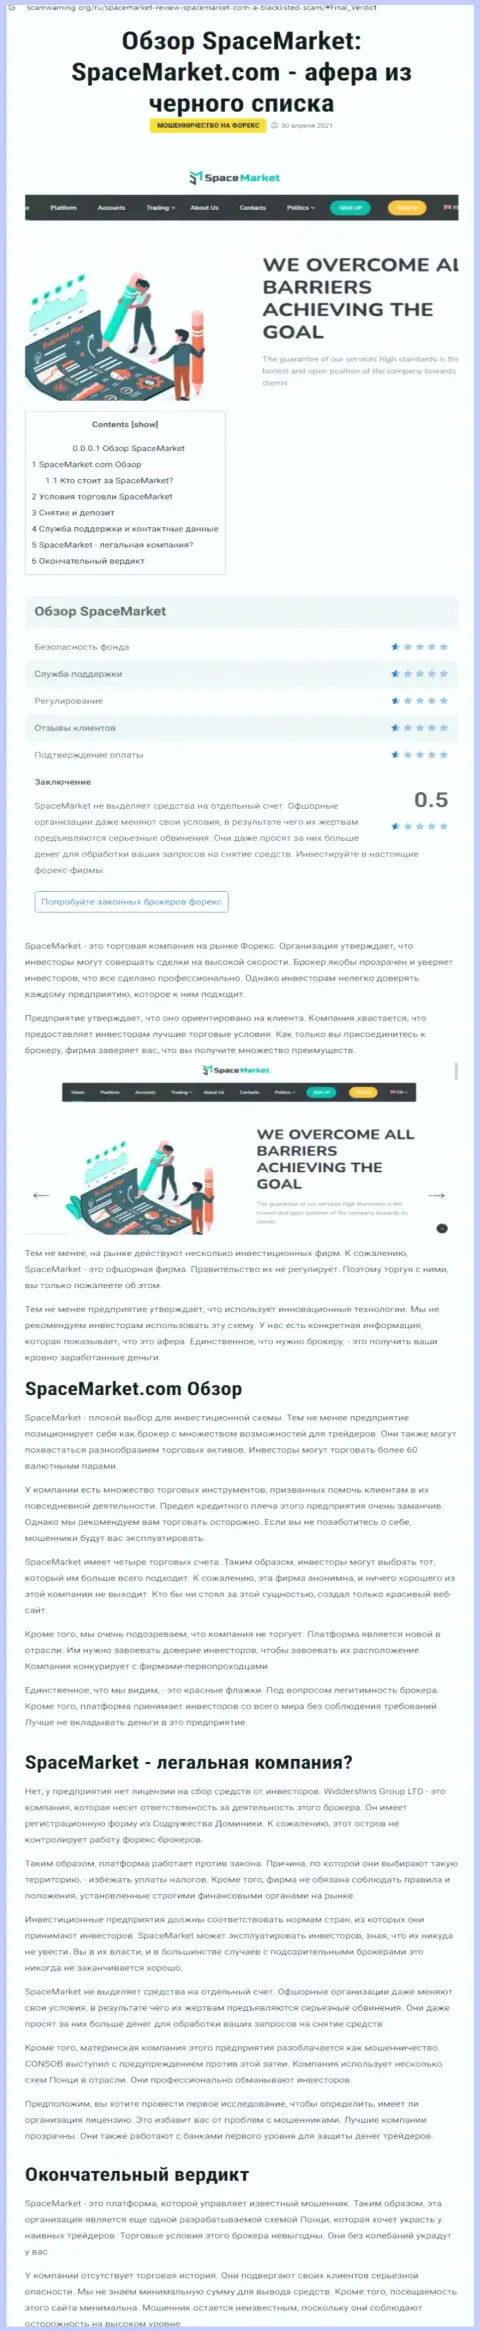 Рекомендуем обходить Space Market стороной, с данной компанией Вы не сумеете заработать (обзорная статья)